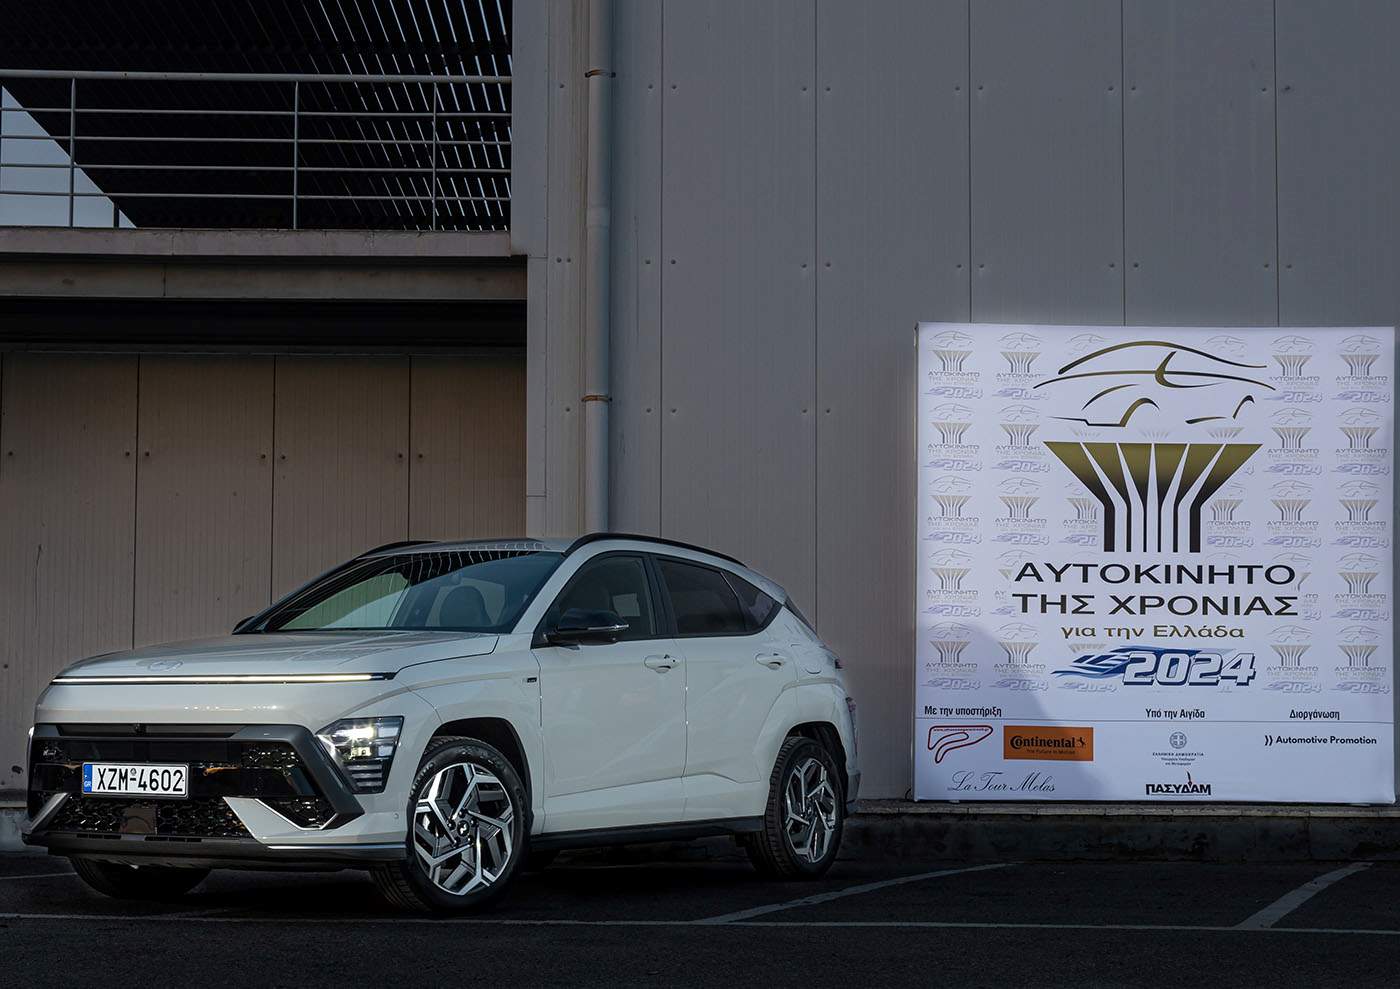 Αυτοκίνητο της Χρονιάς 2024 για την Ελλάδα – To Hyundai Kona ο μεγάλος νικητής